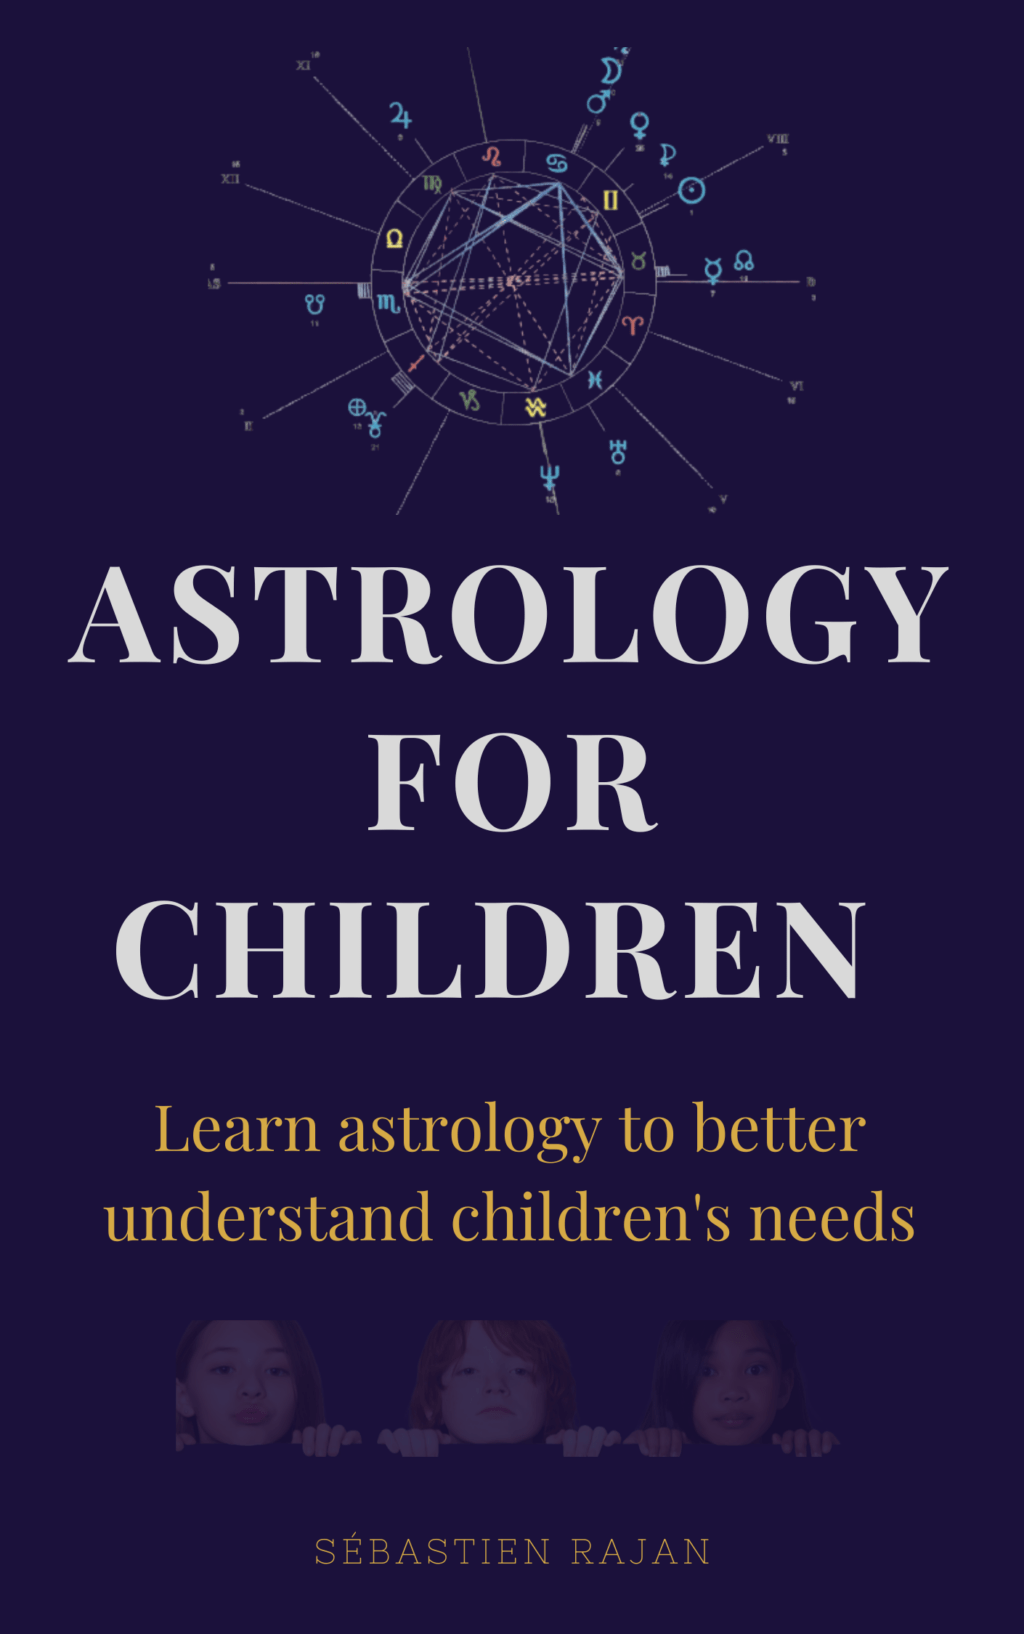 Astrology for children